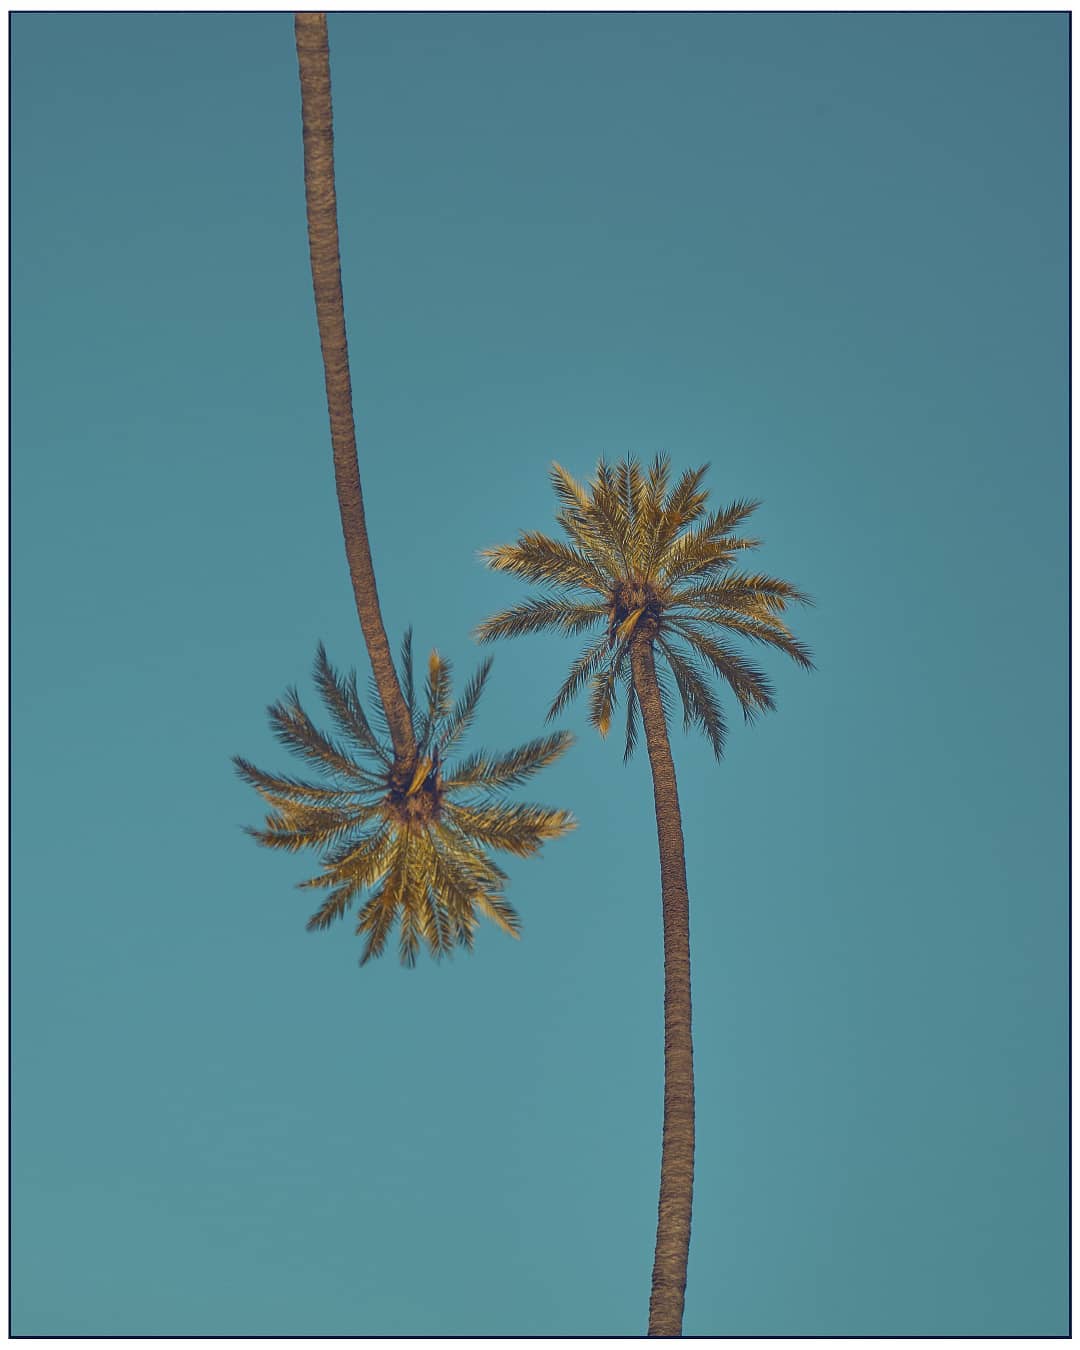 Palm Lovers est un cliché du photographe Bodgan Sorg